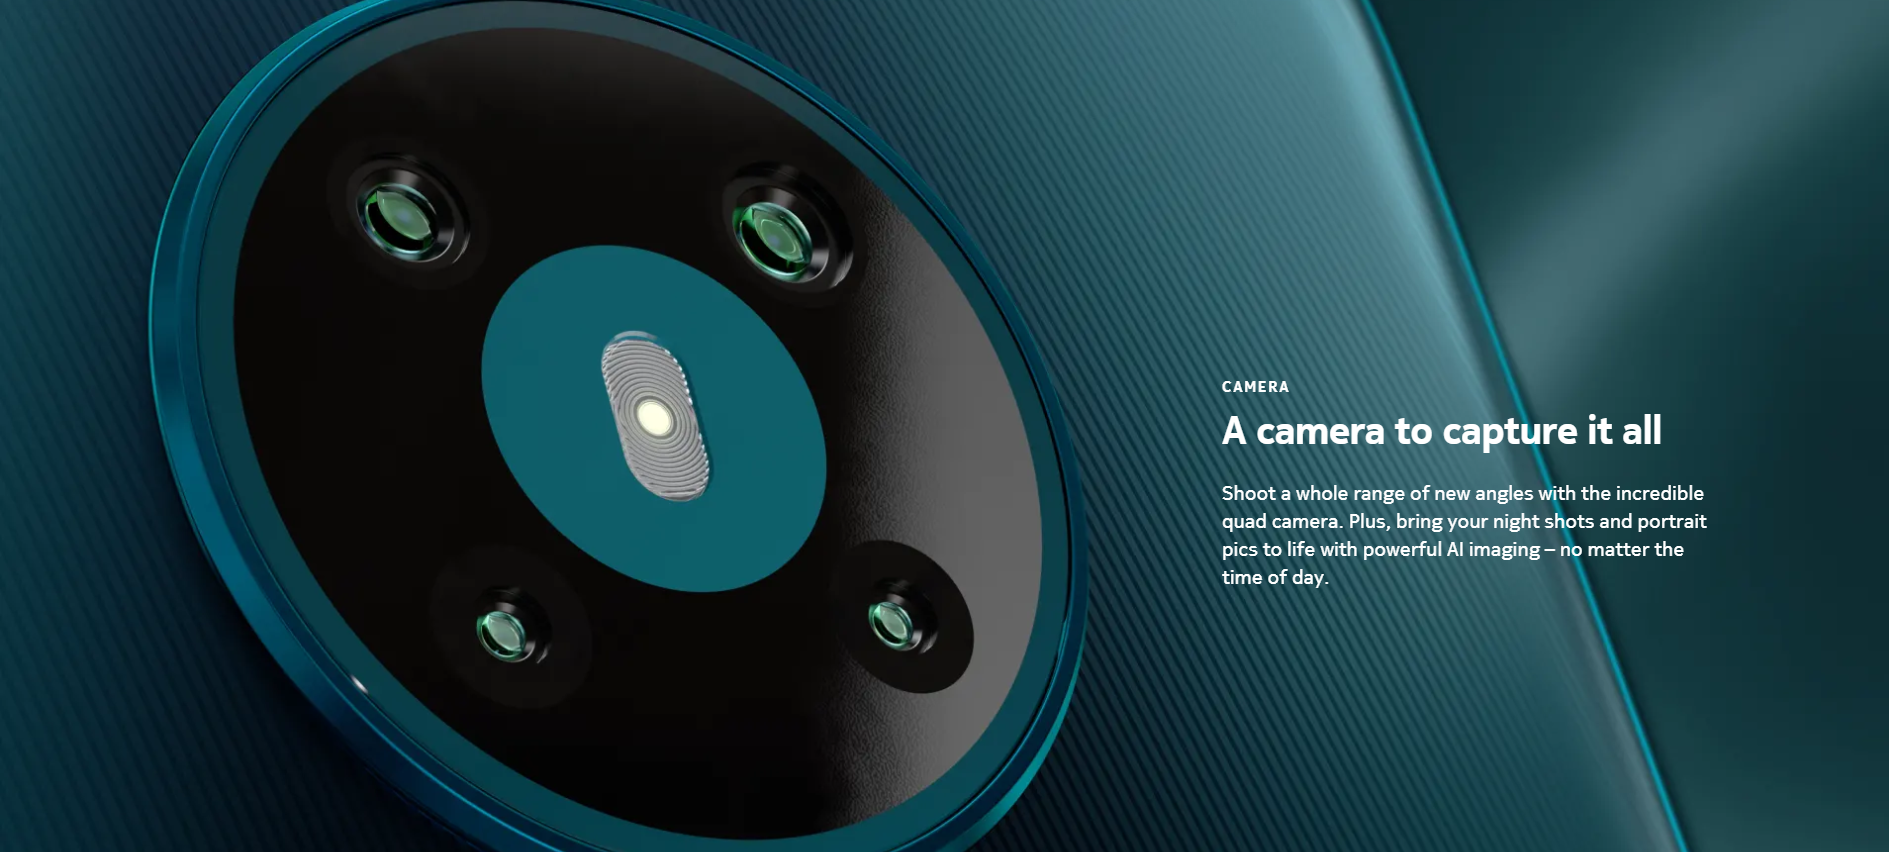 圓盾式4攝相機配置，水滴全屏，Snapdragon 665處理器，兩天待機續航力： Nokia 5.3正式發佈！ 2